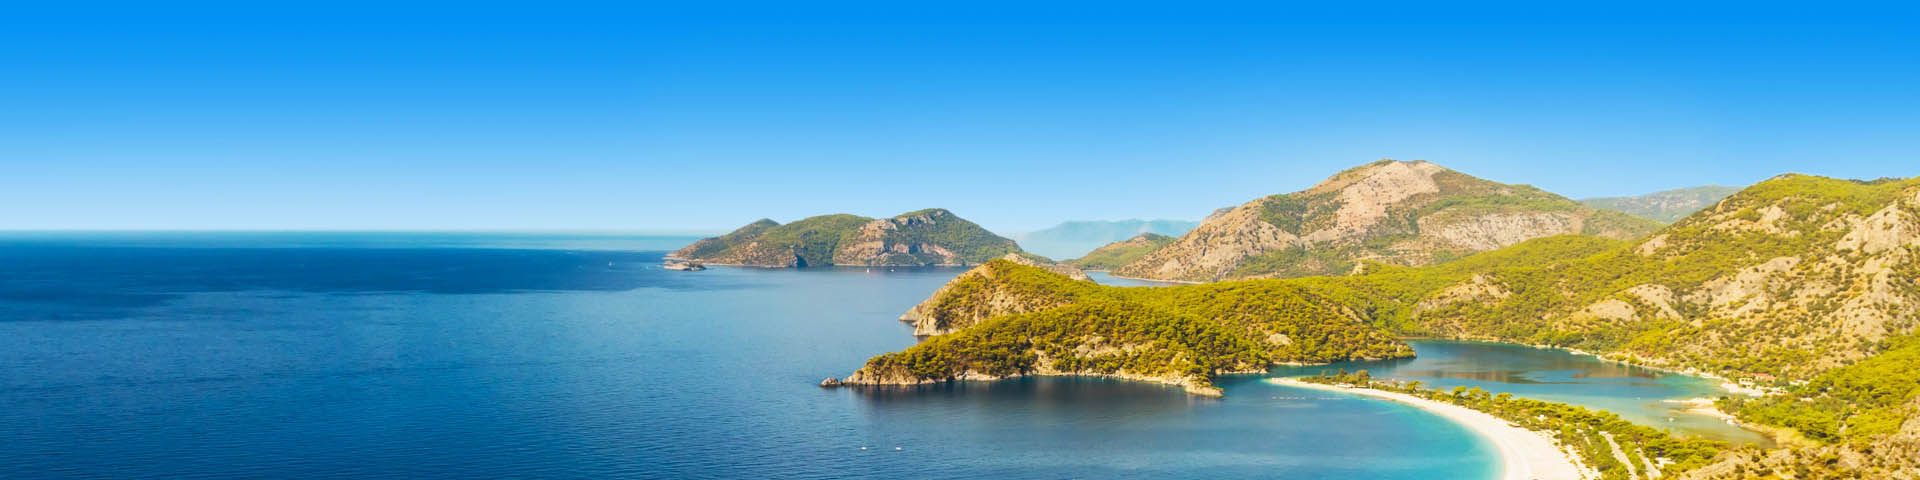 Panorama van zee en gebergte in Turkije 